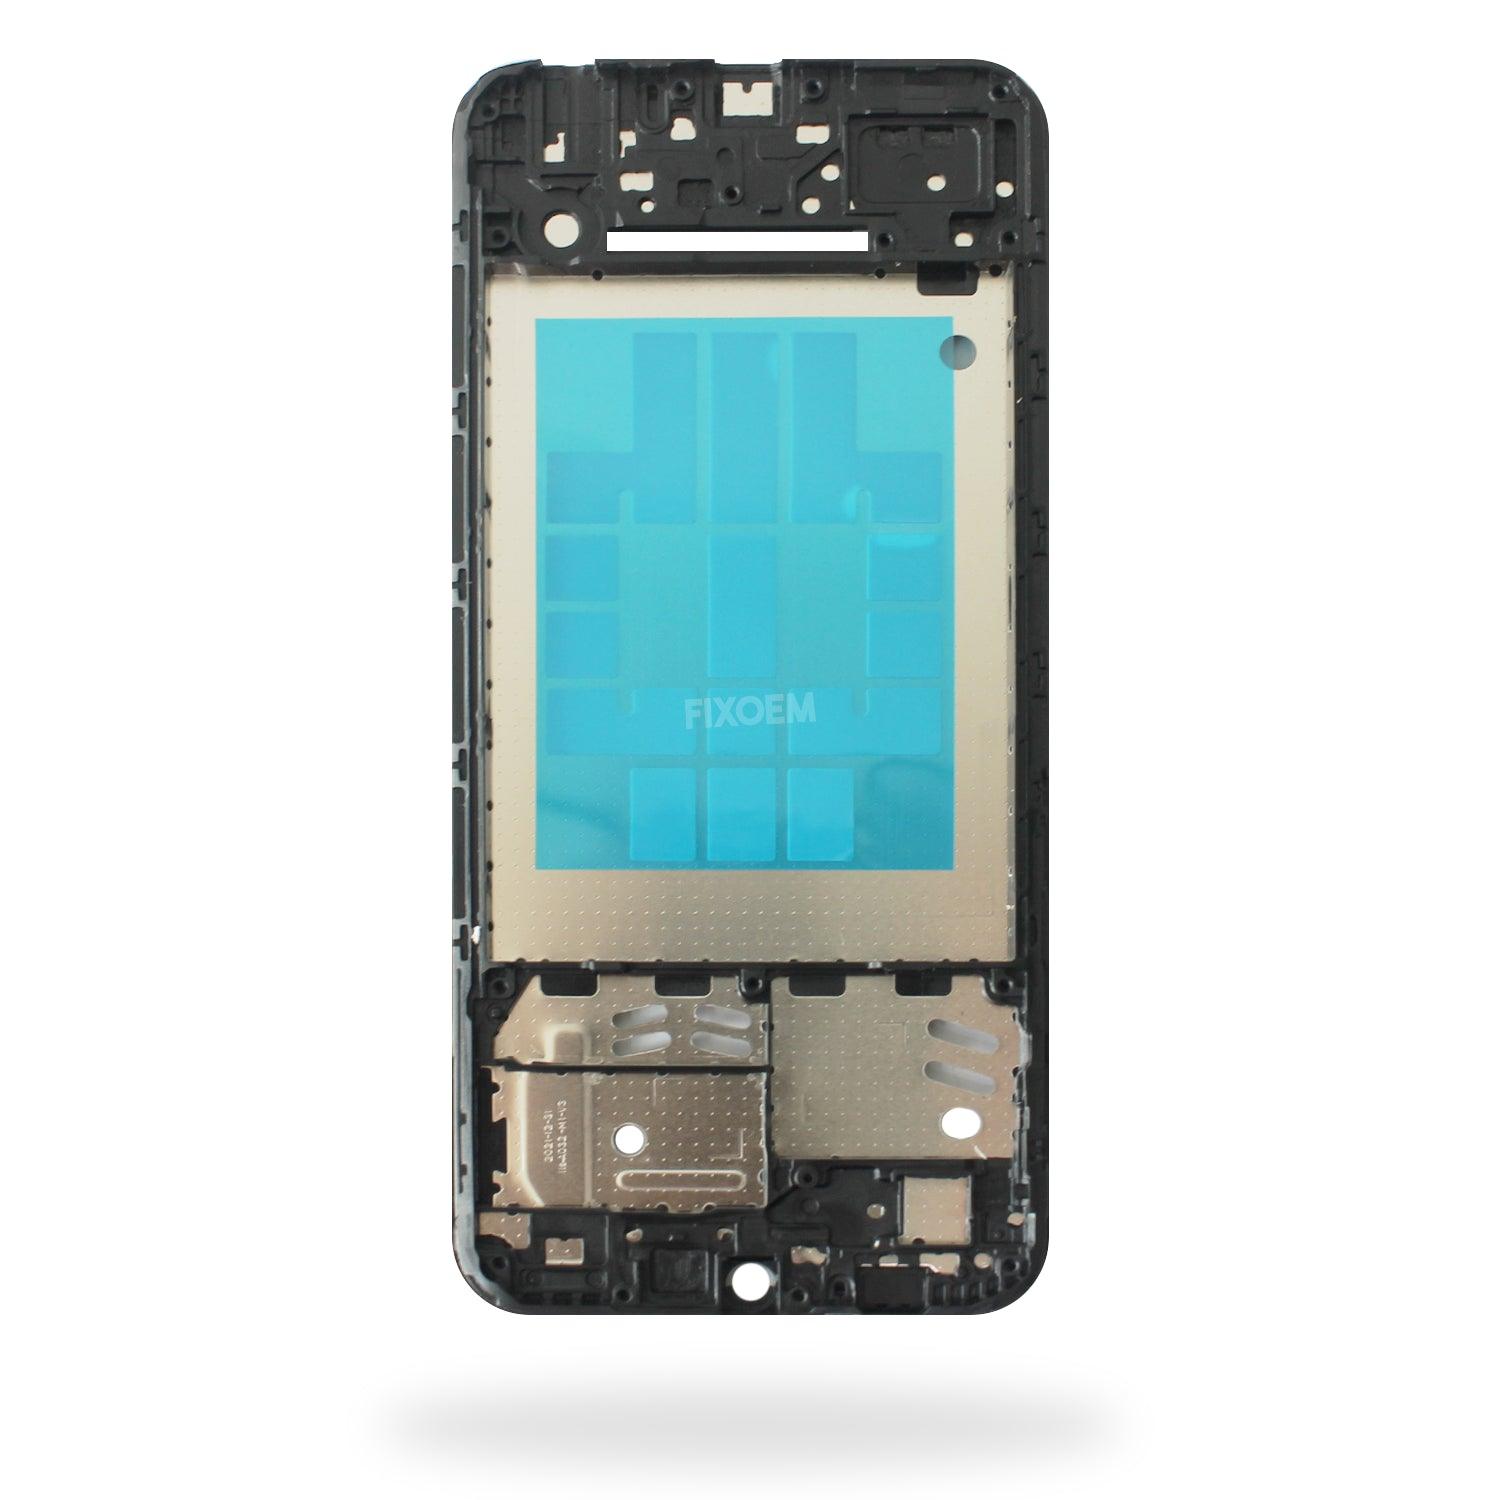 Bisel Samsung A03 Core A032 a solo $ 110.00 Refaccion y puestos celulares, refurbish y microelectronica.- FixOEM